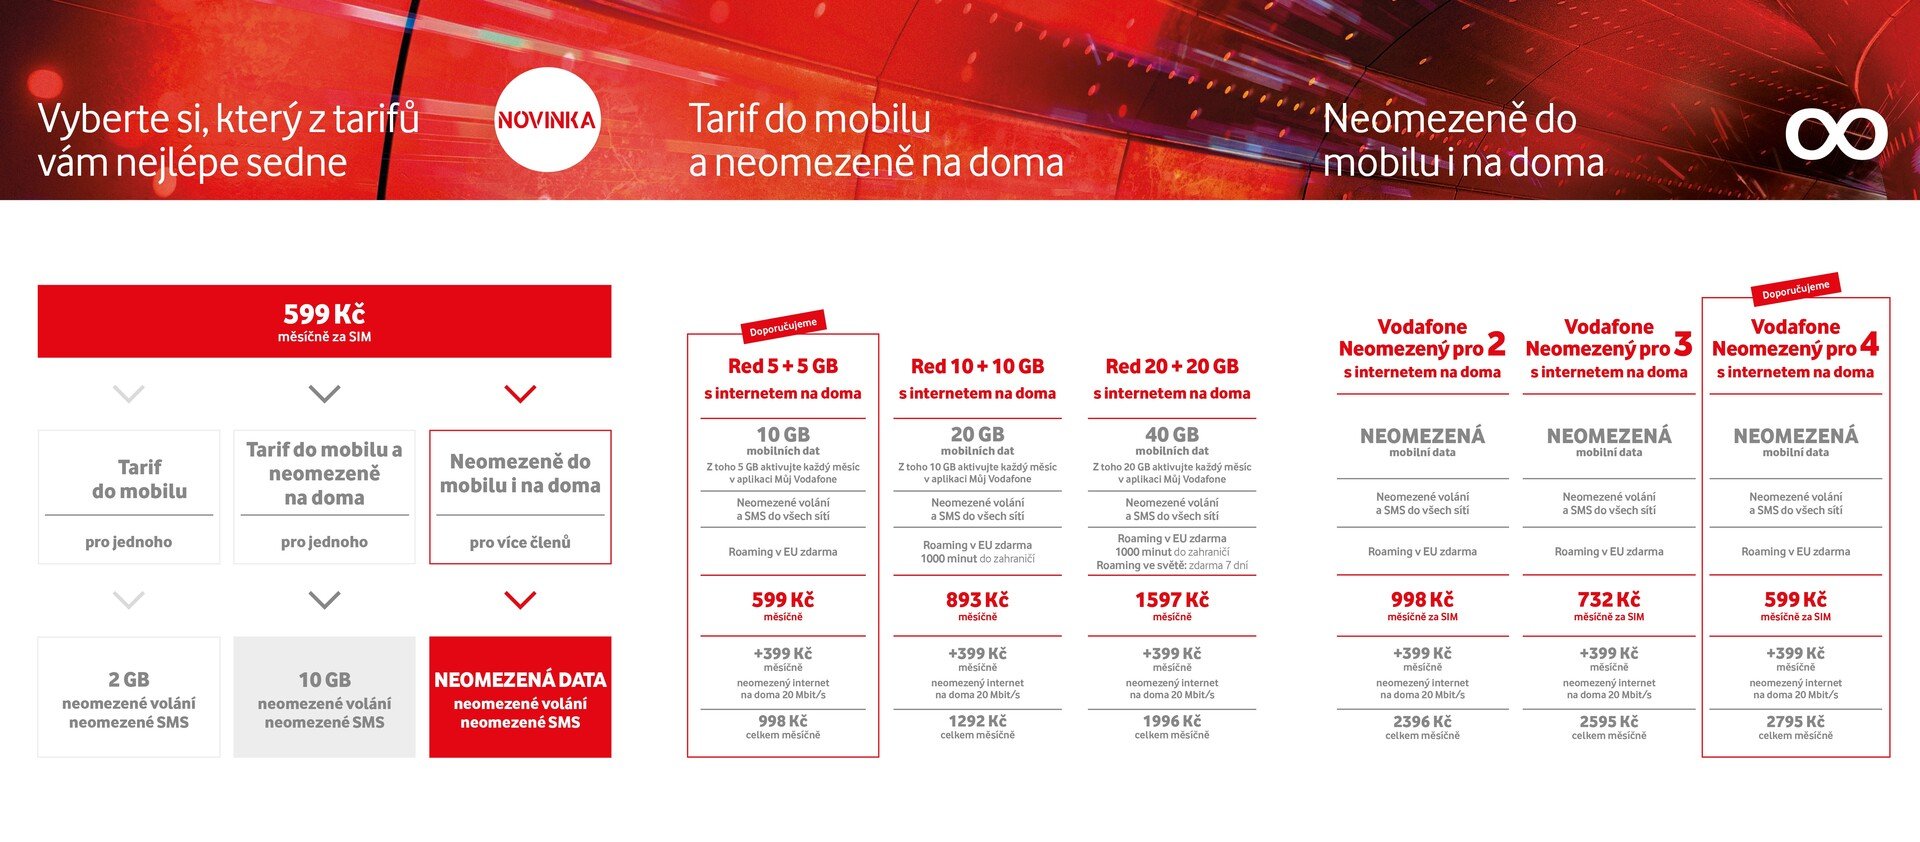 Vodafone Neomezenž